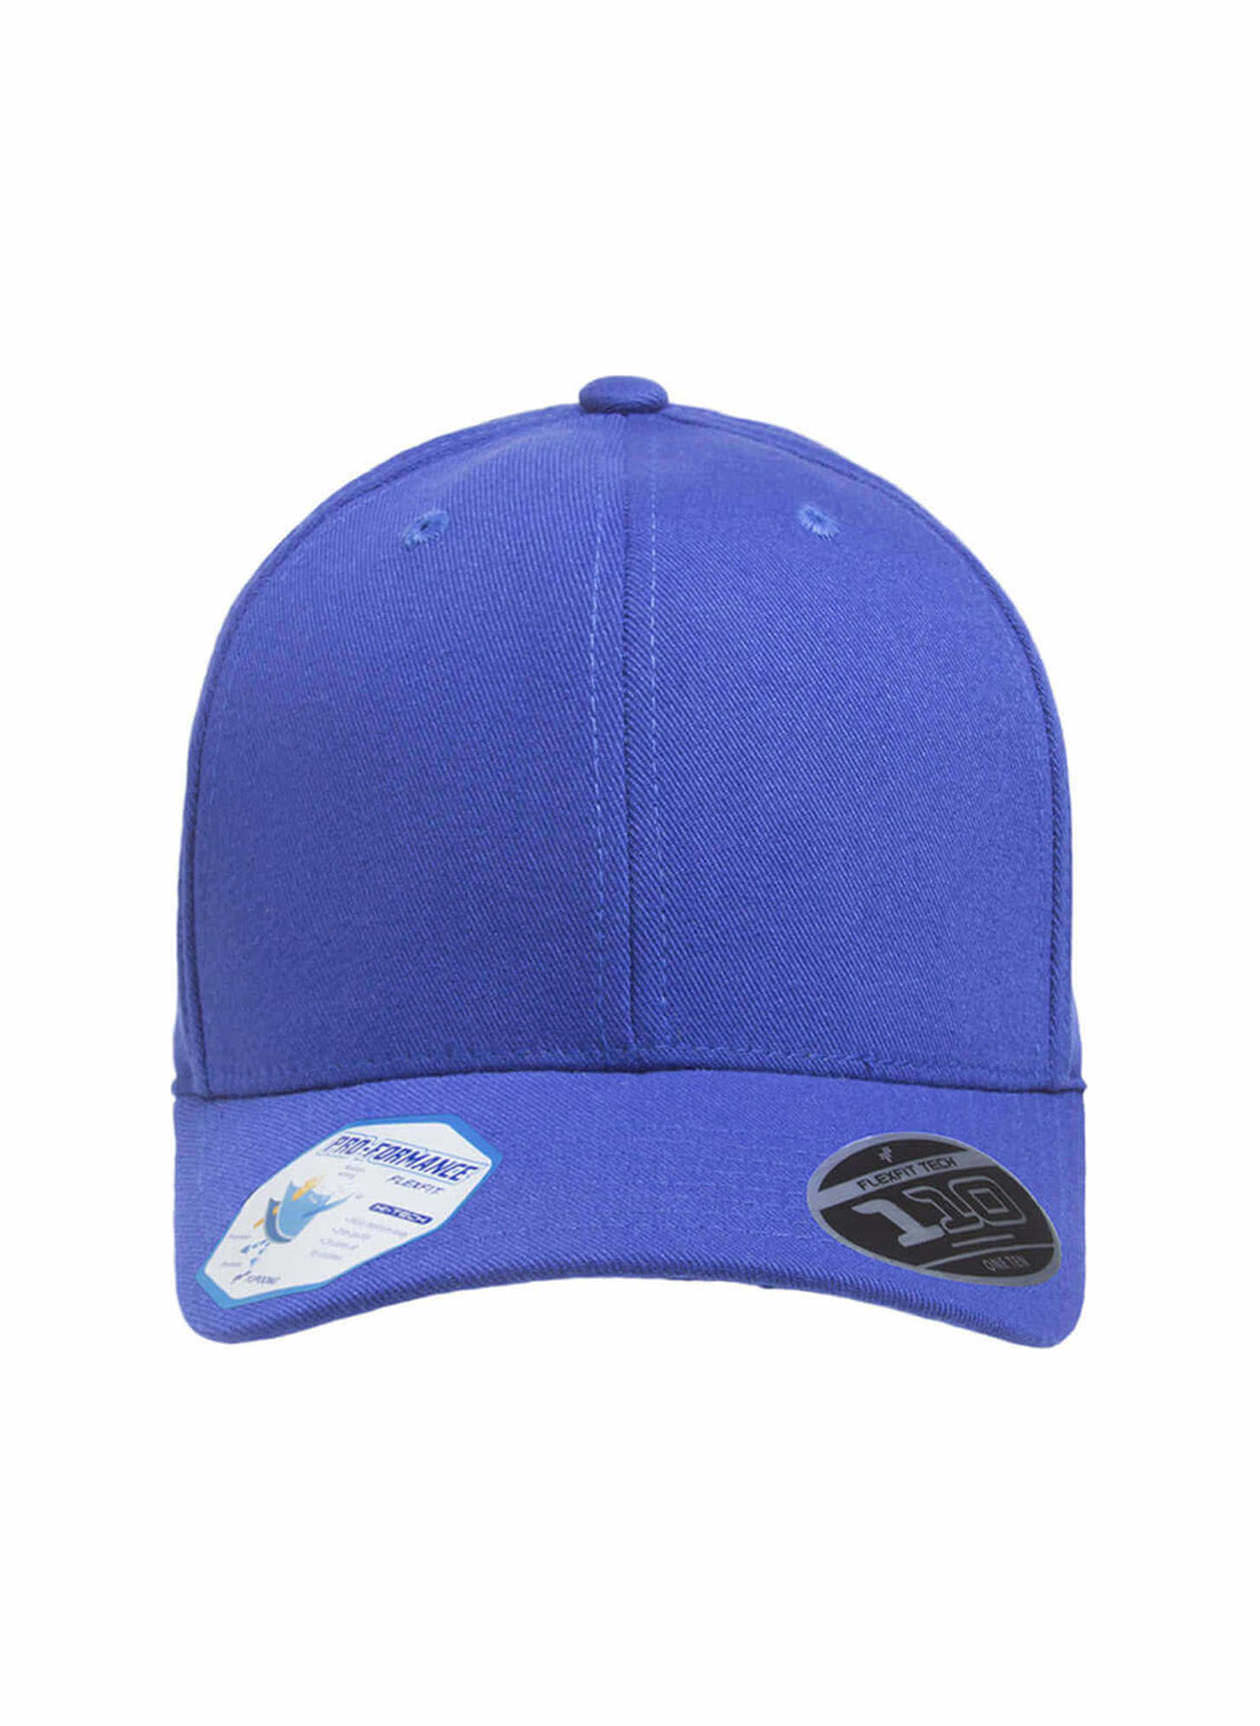 Flexfit Pro-Formance Solid Hat Royal | Flexfit